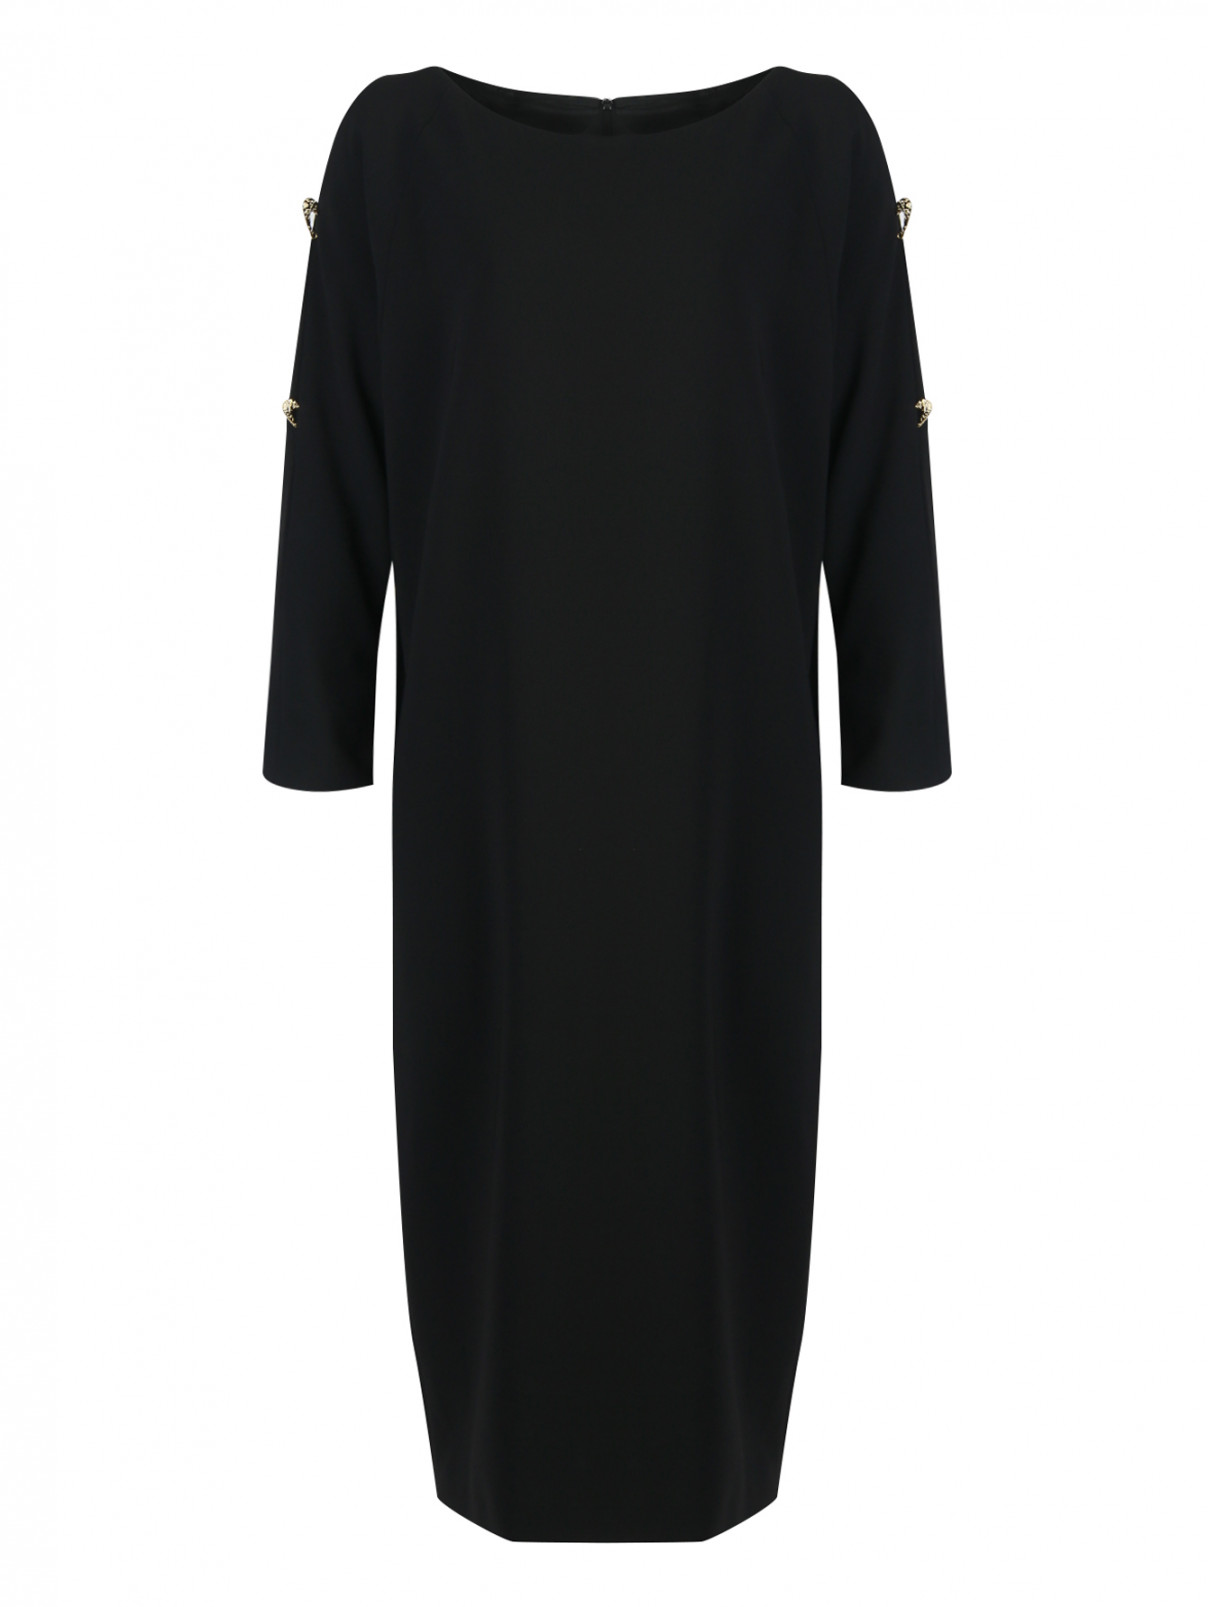 Платье с декором на рукавах Marina Rinaldi  –  Общий вид  – Цвет:  Черный